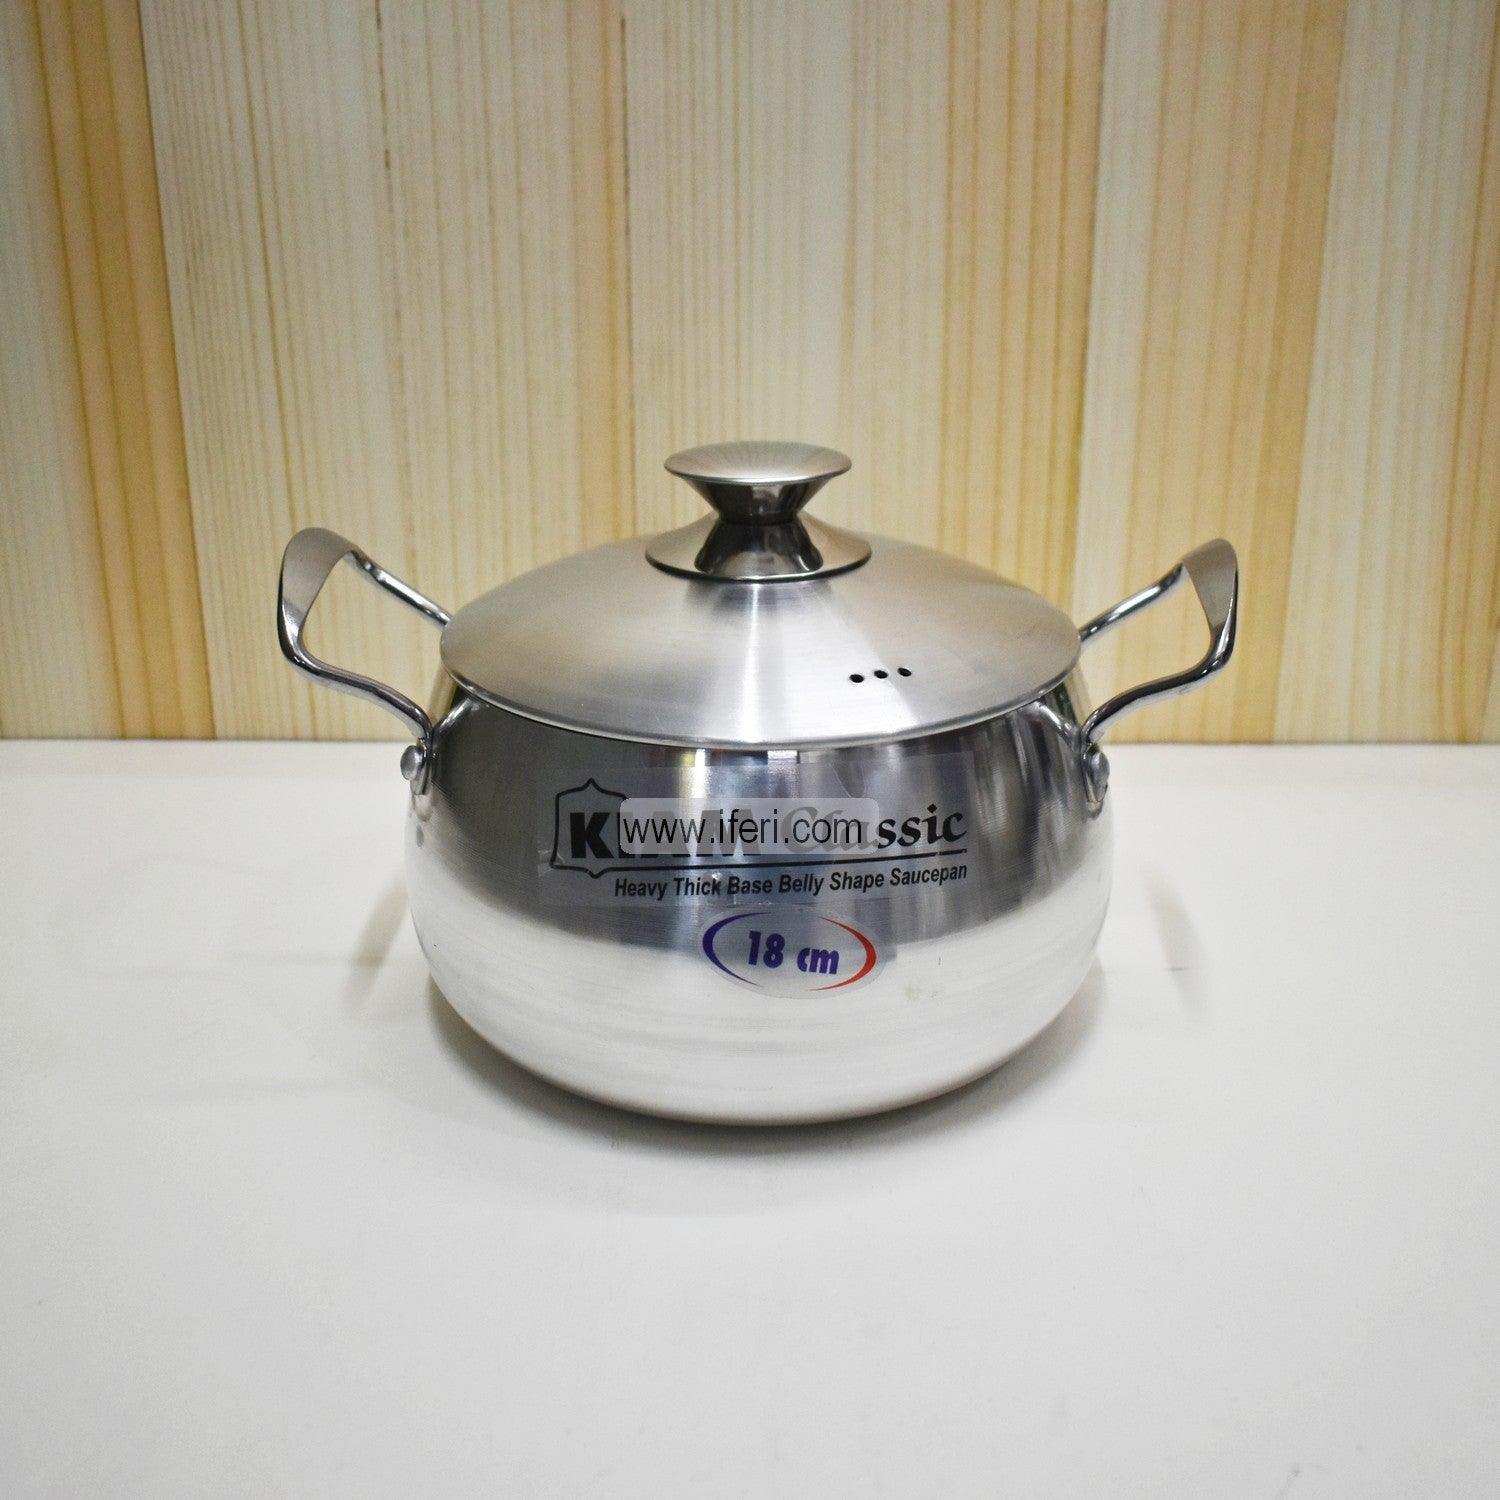 16 cm Kiam Aluminium Belly Shape Cookware With Aluminium Lid BCG0221 Price in Bangladesh - iferi.com